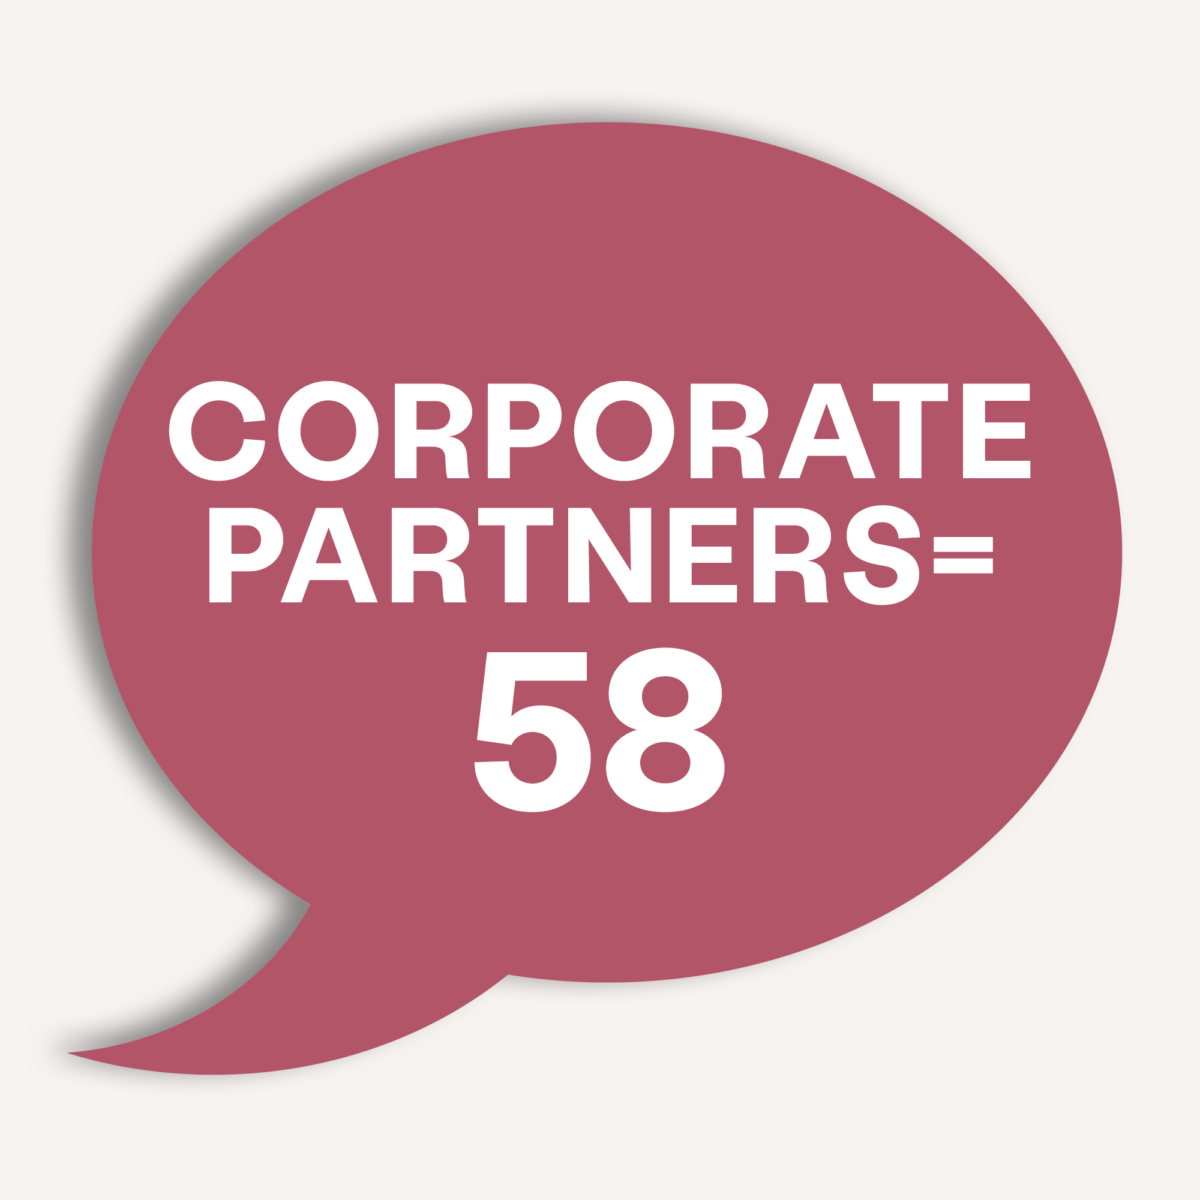 Partenaires corporatifs